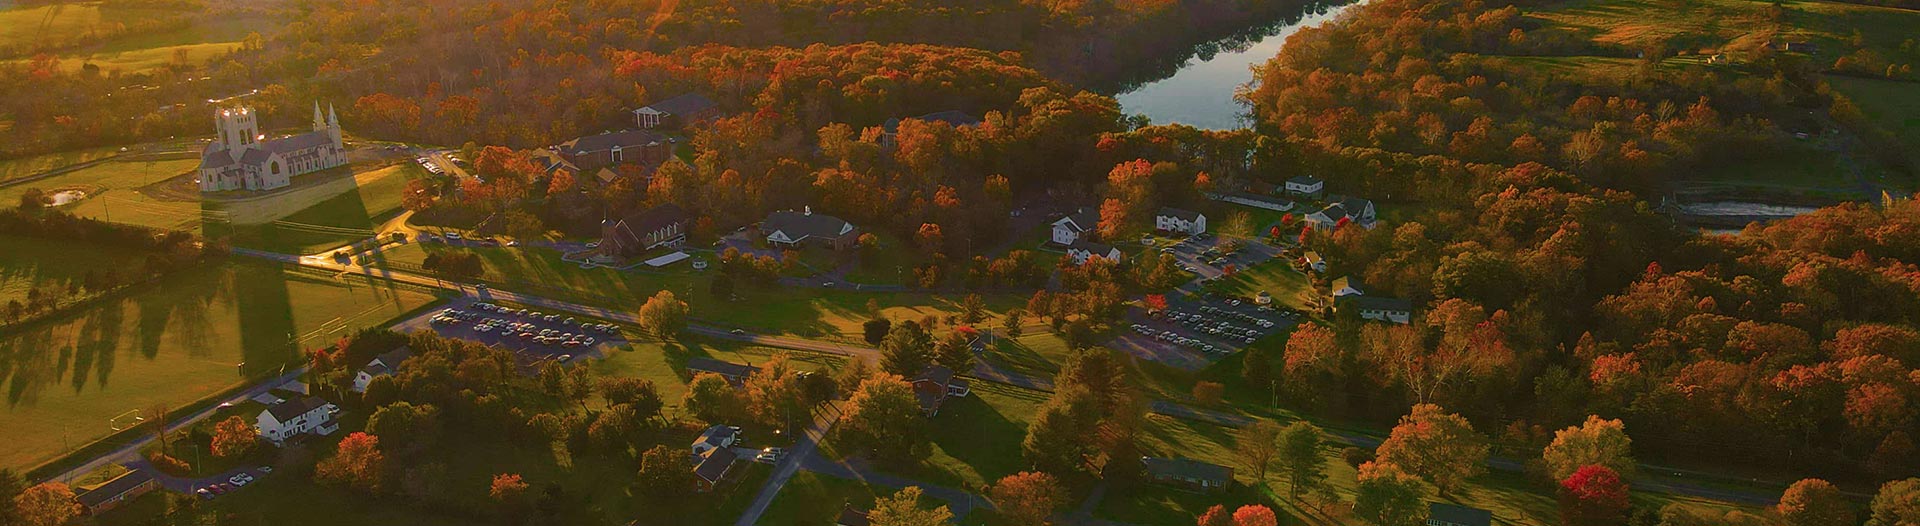 Christendom College Campus aerial view